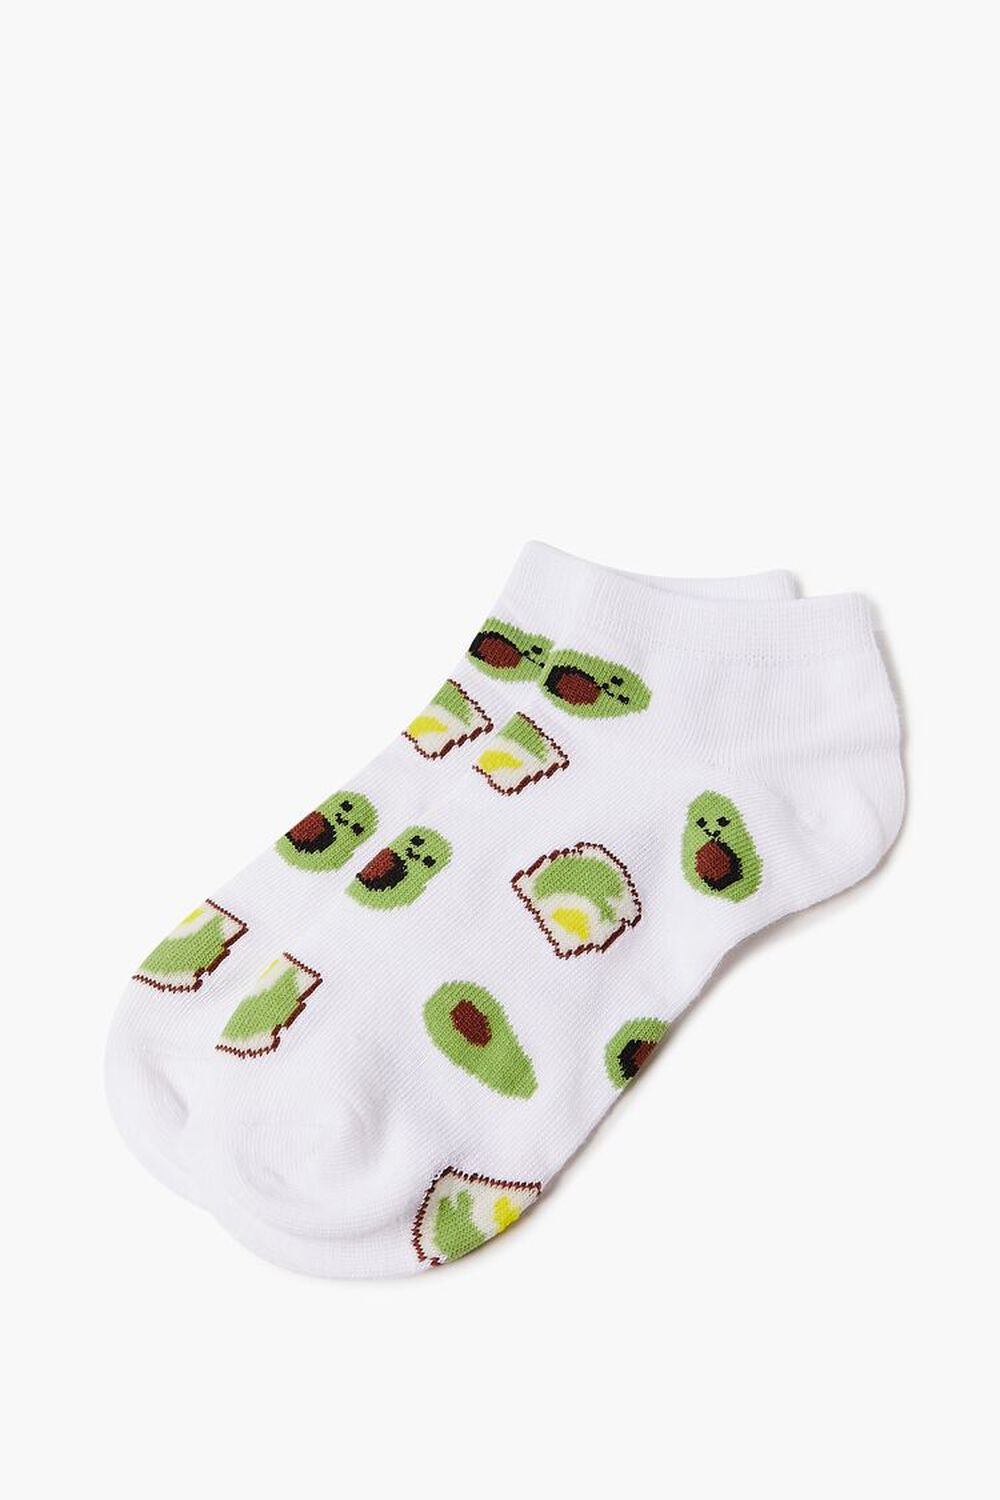 Avocado Ankle Socks, image 2